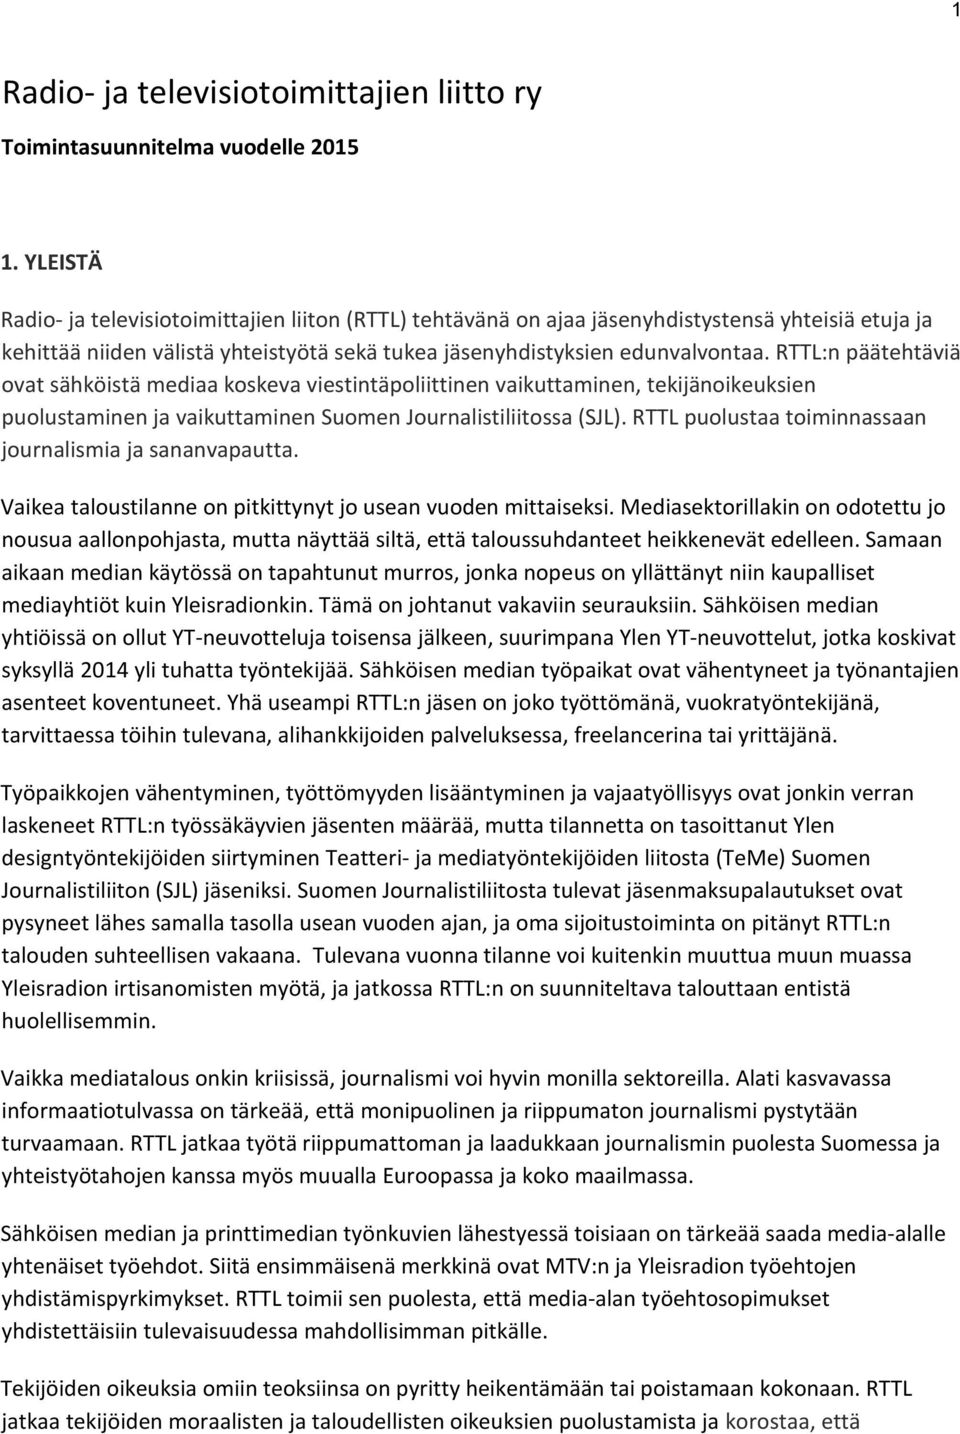 RTTL:n päätehtäviä ovat sähköistä mediaa koskeva viestintäpoliittinen vaikuttaminen, tekijänoikeuksien puolustaminen ja vaikuttaminen Suomen Journalistiliitossa (SJL).